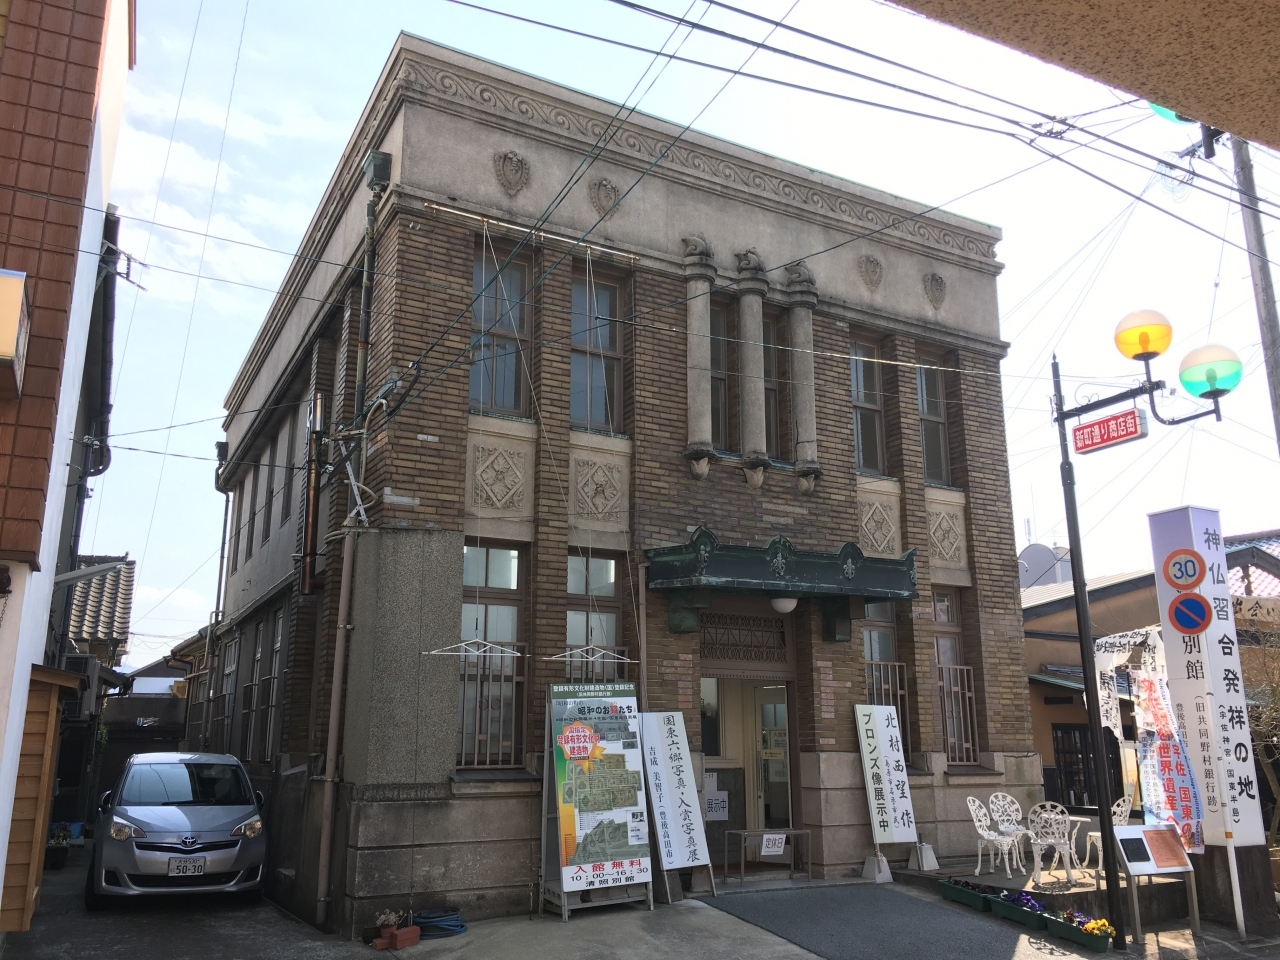 旧共同野村銀行の建物は火曜日が定休日で、内部の見学は出来ませんでした。
